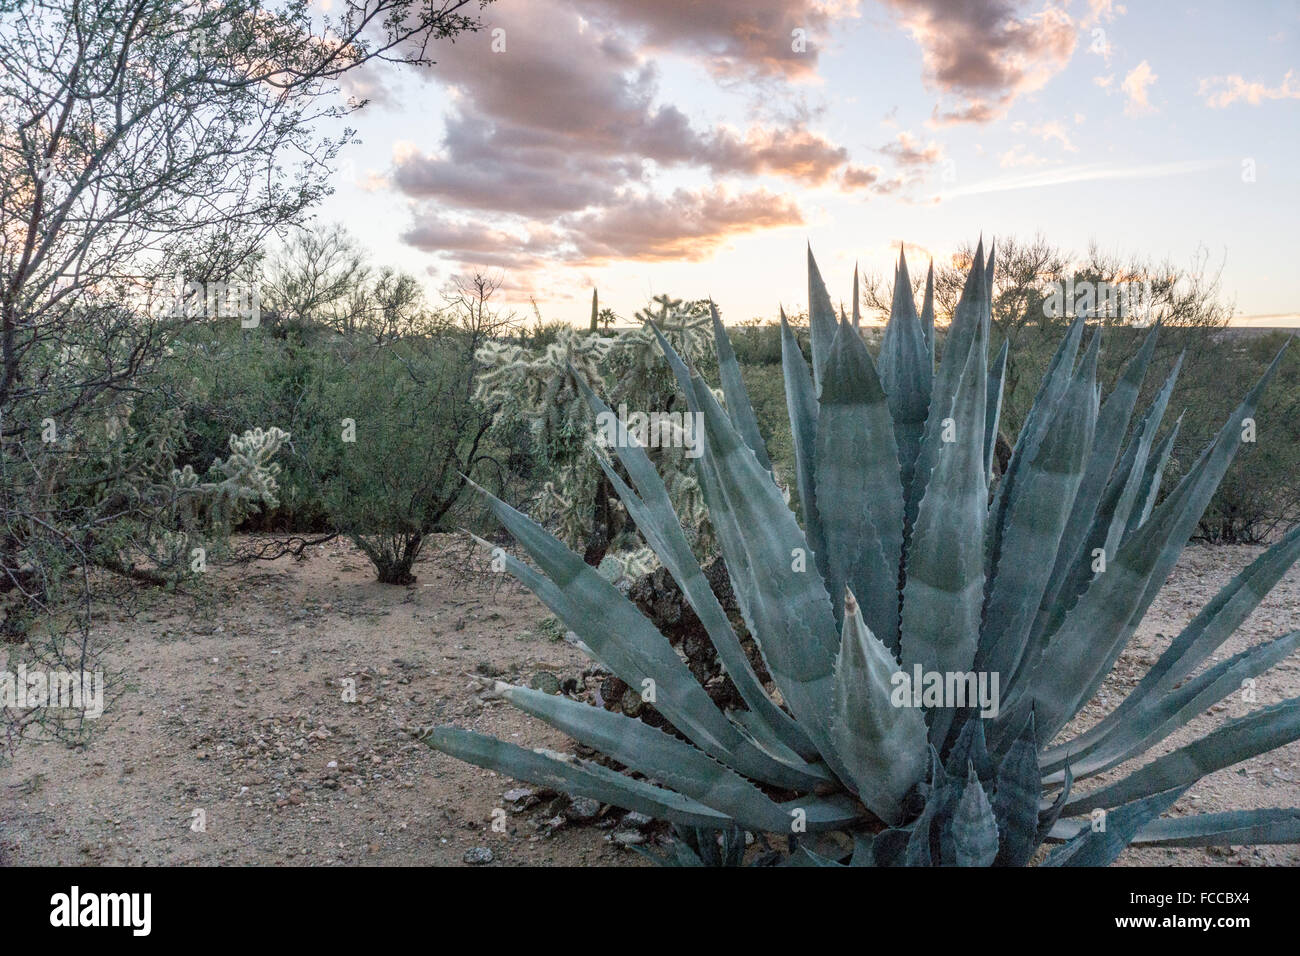 Di sera presto vista minimamente curato di vegetazione nel deserto fuori percorso in sviluppo pianificato per oltre 55 pensionati Valle Verde Arizona Foto Stock